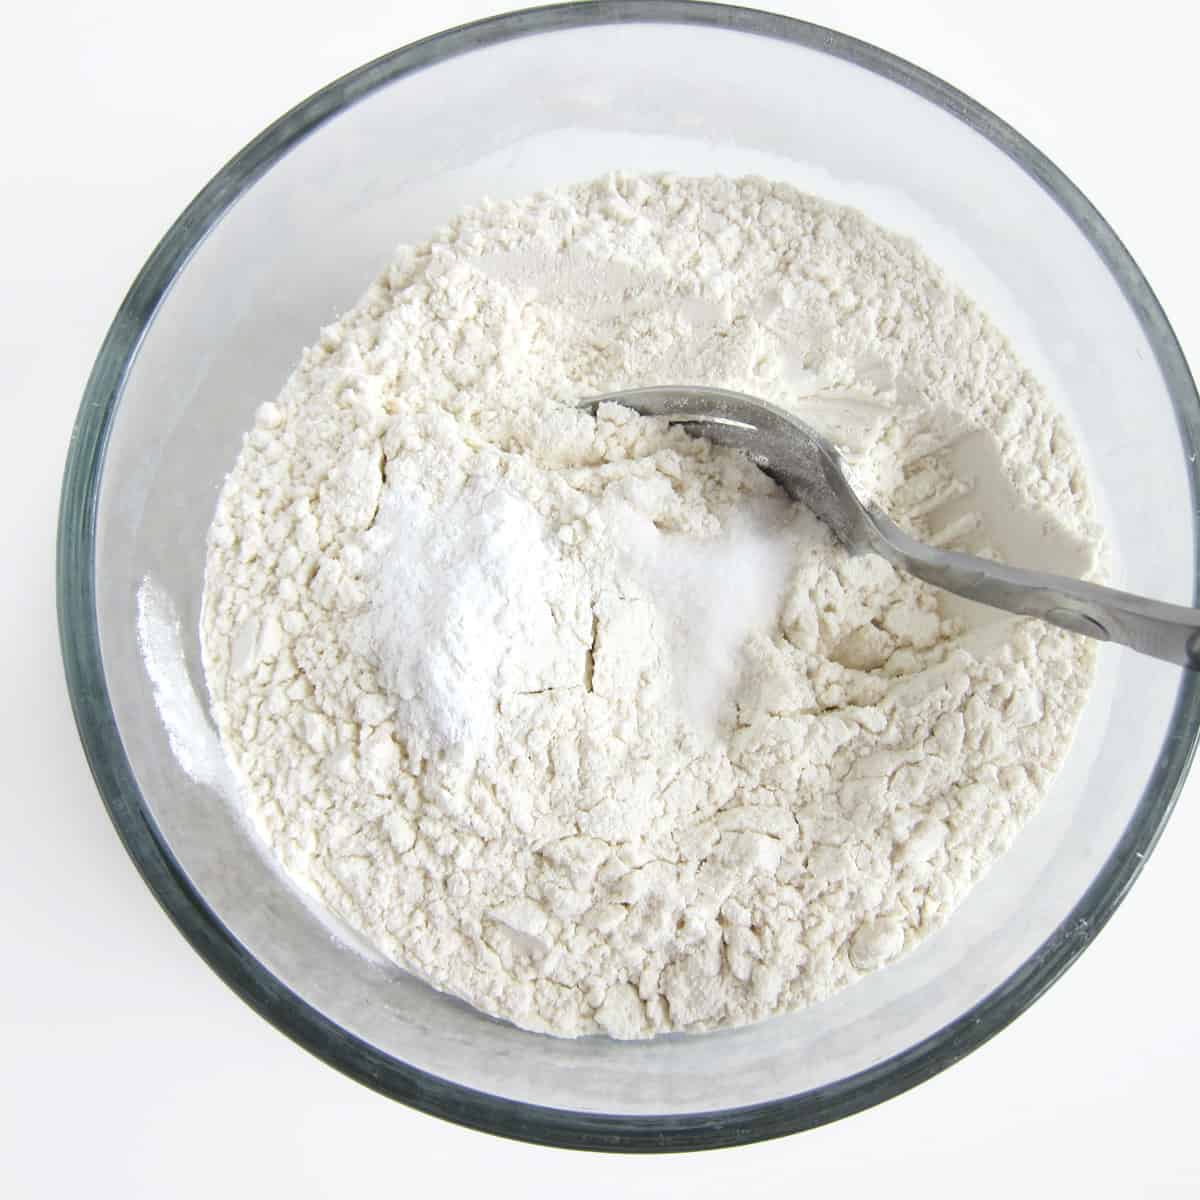 blend flour, baking powder, and salt